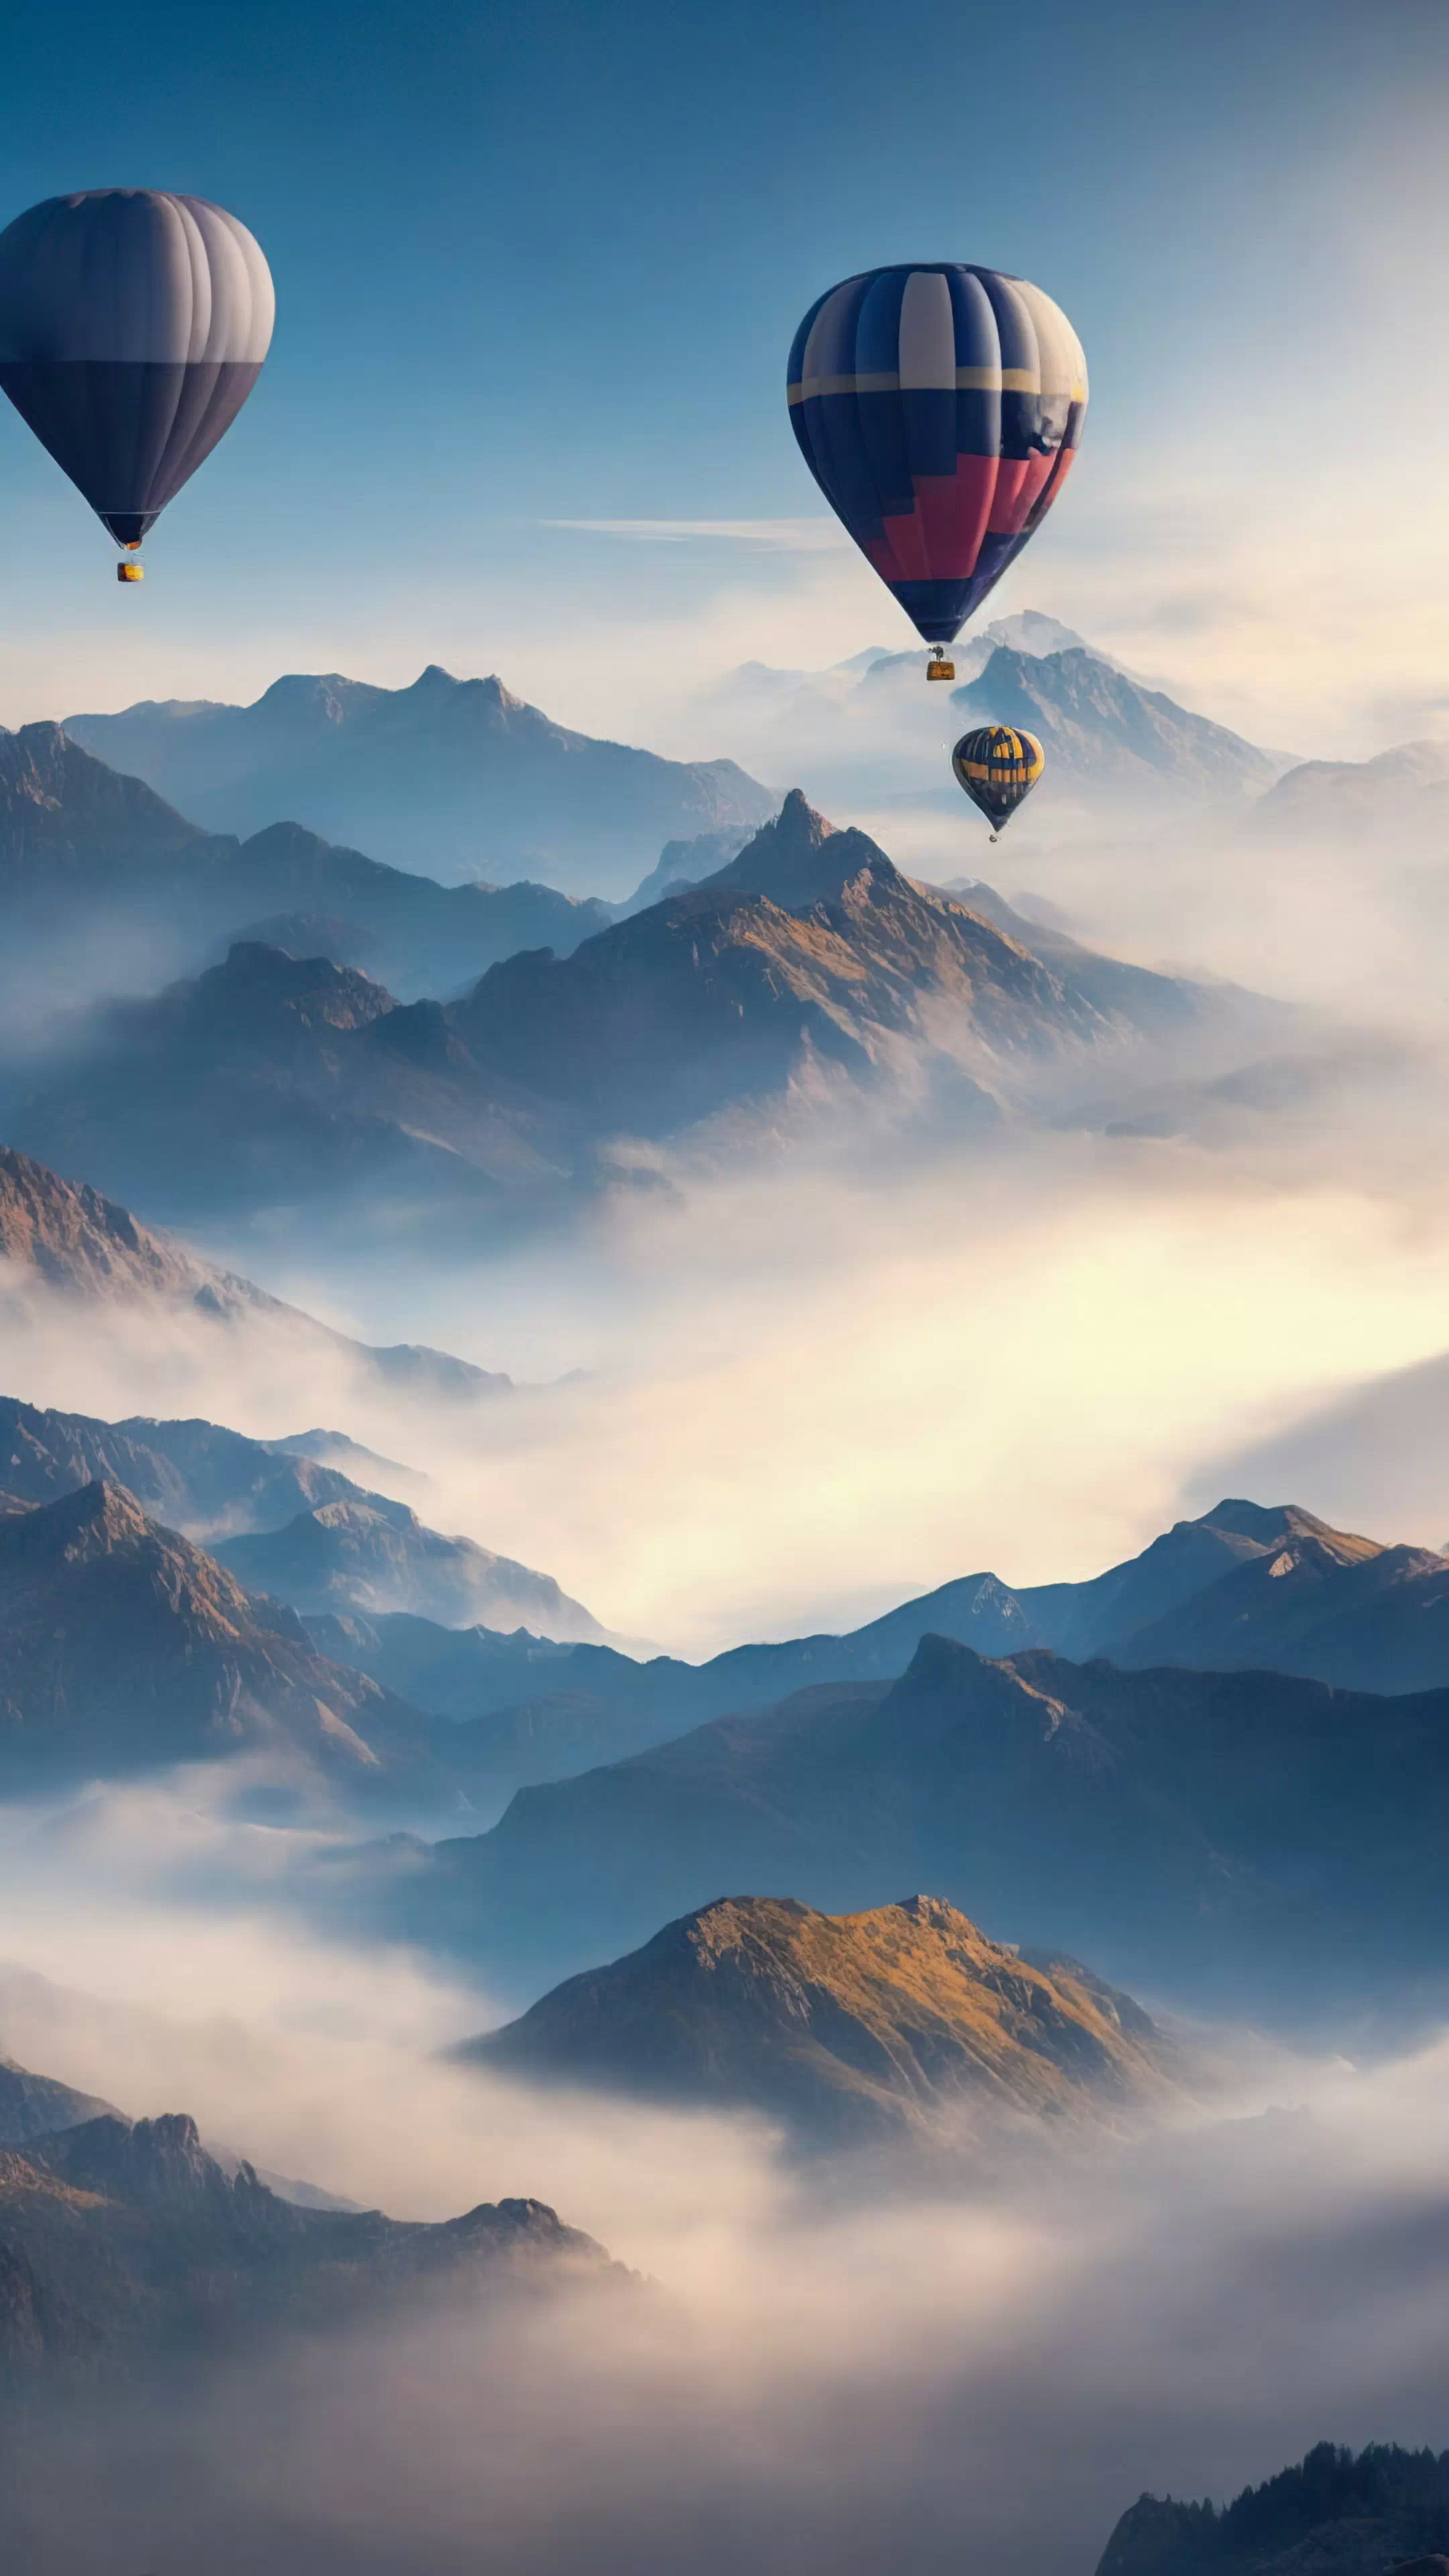 Apportez la beauté des cieux à votre téléphone avec notre fond d'écran en HD des paysages, capturant un ciel surréaliste rempli de montgolfières survolant un paysage montagneux, et laissez votre appareil devenir une fenêtre sur un monde de fantaisie.